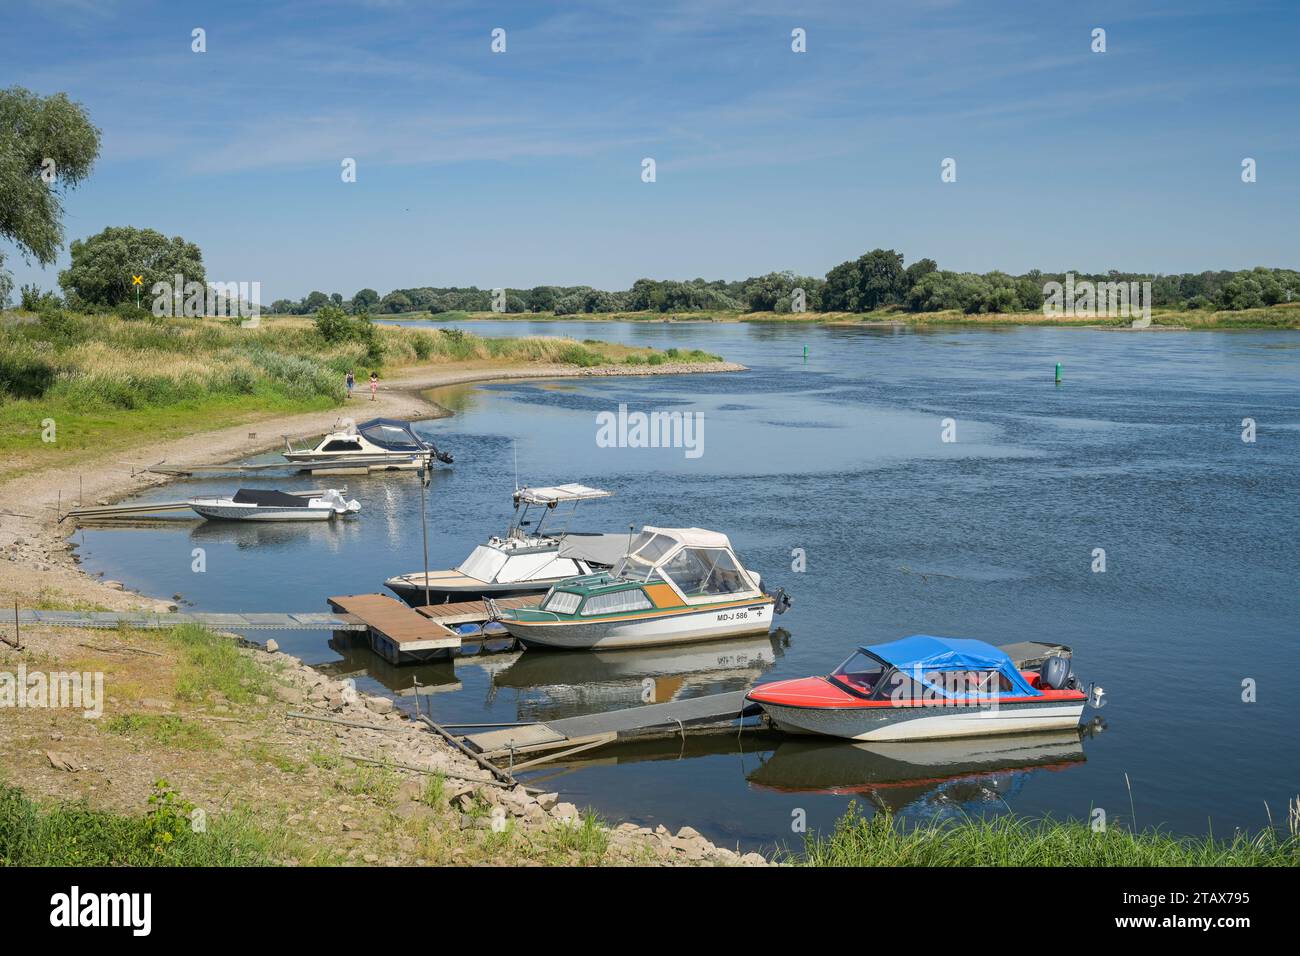 Motorboote, Schiffsanleger, Elbe bei Barby, Sachsen-Anhalt, Deutschland *** Motorboats, jetty, Elbe near Barby, Saxony-Anhalt, Germany Stock Photo